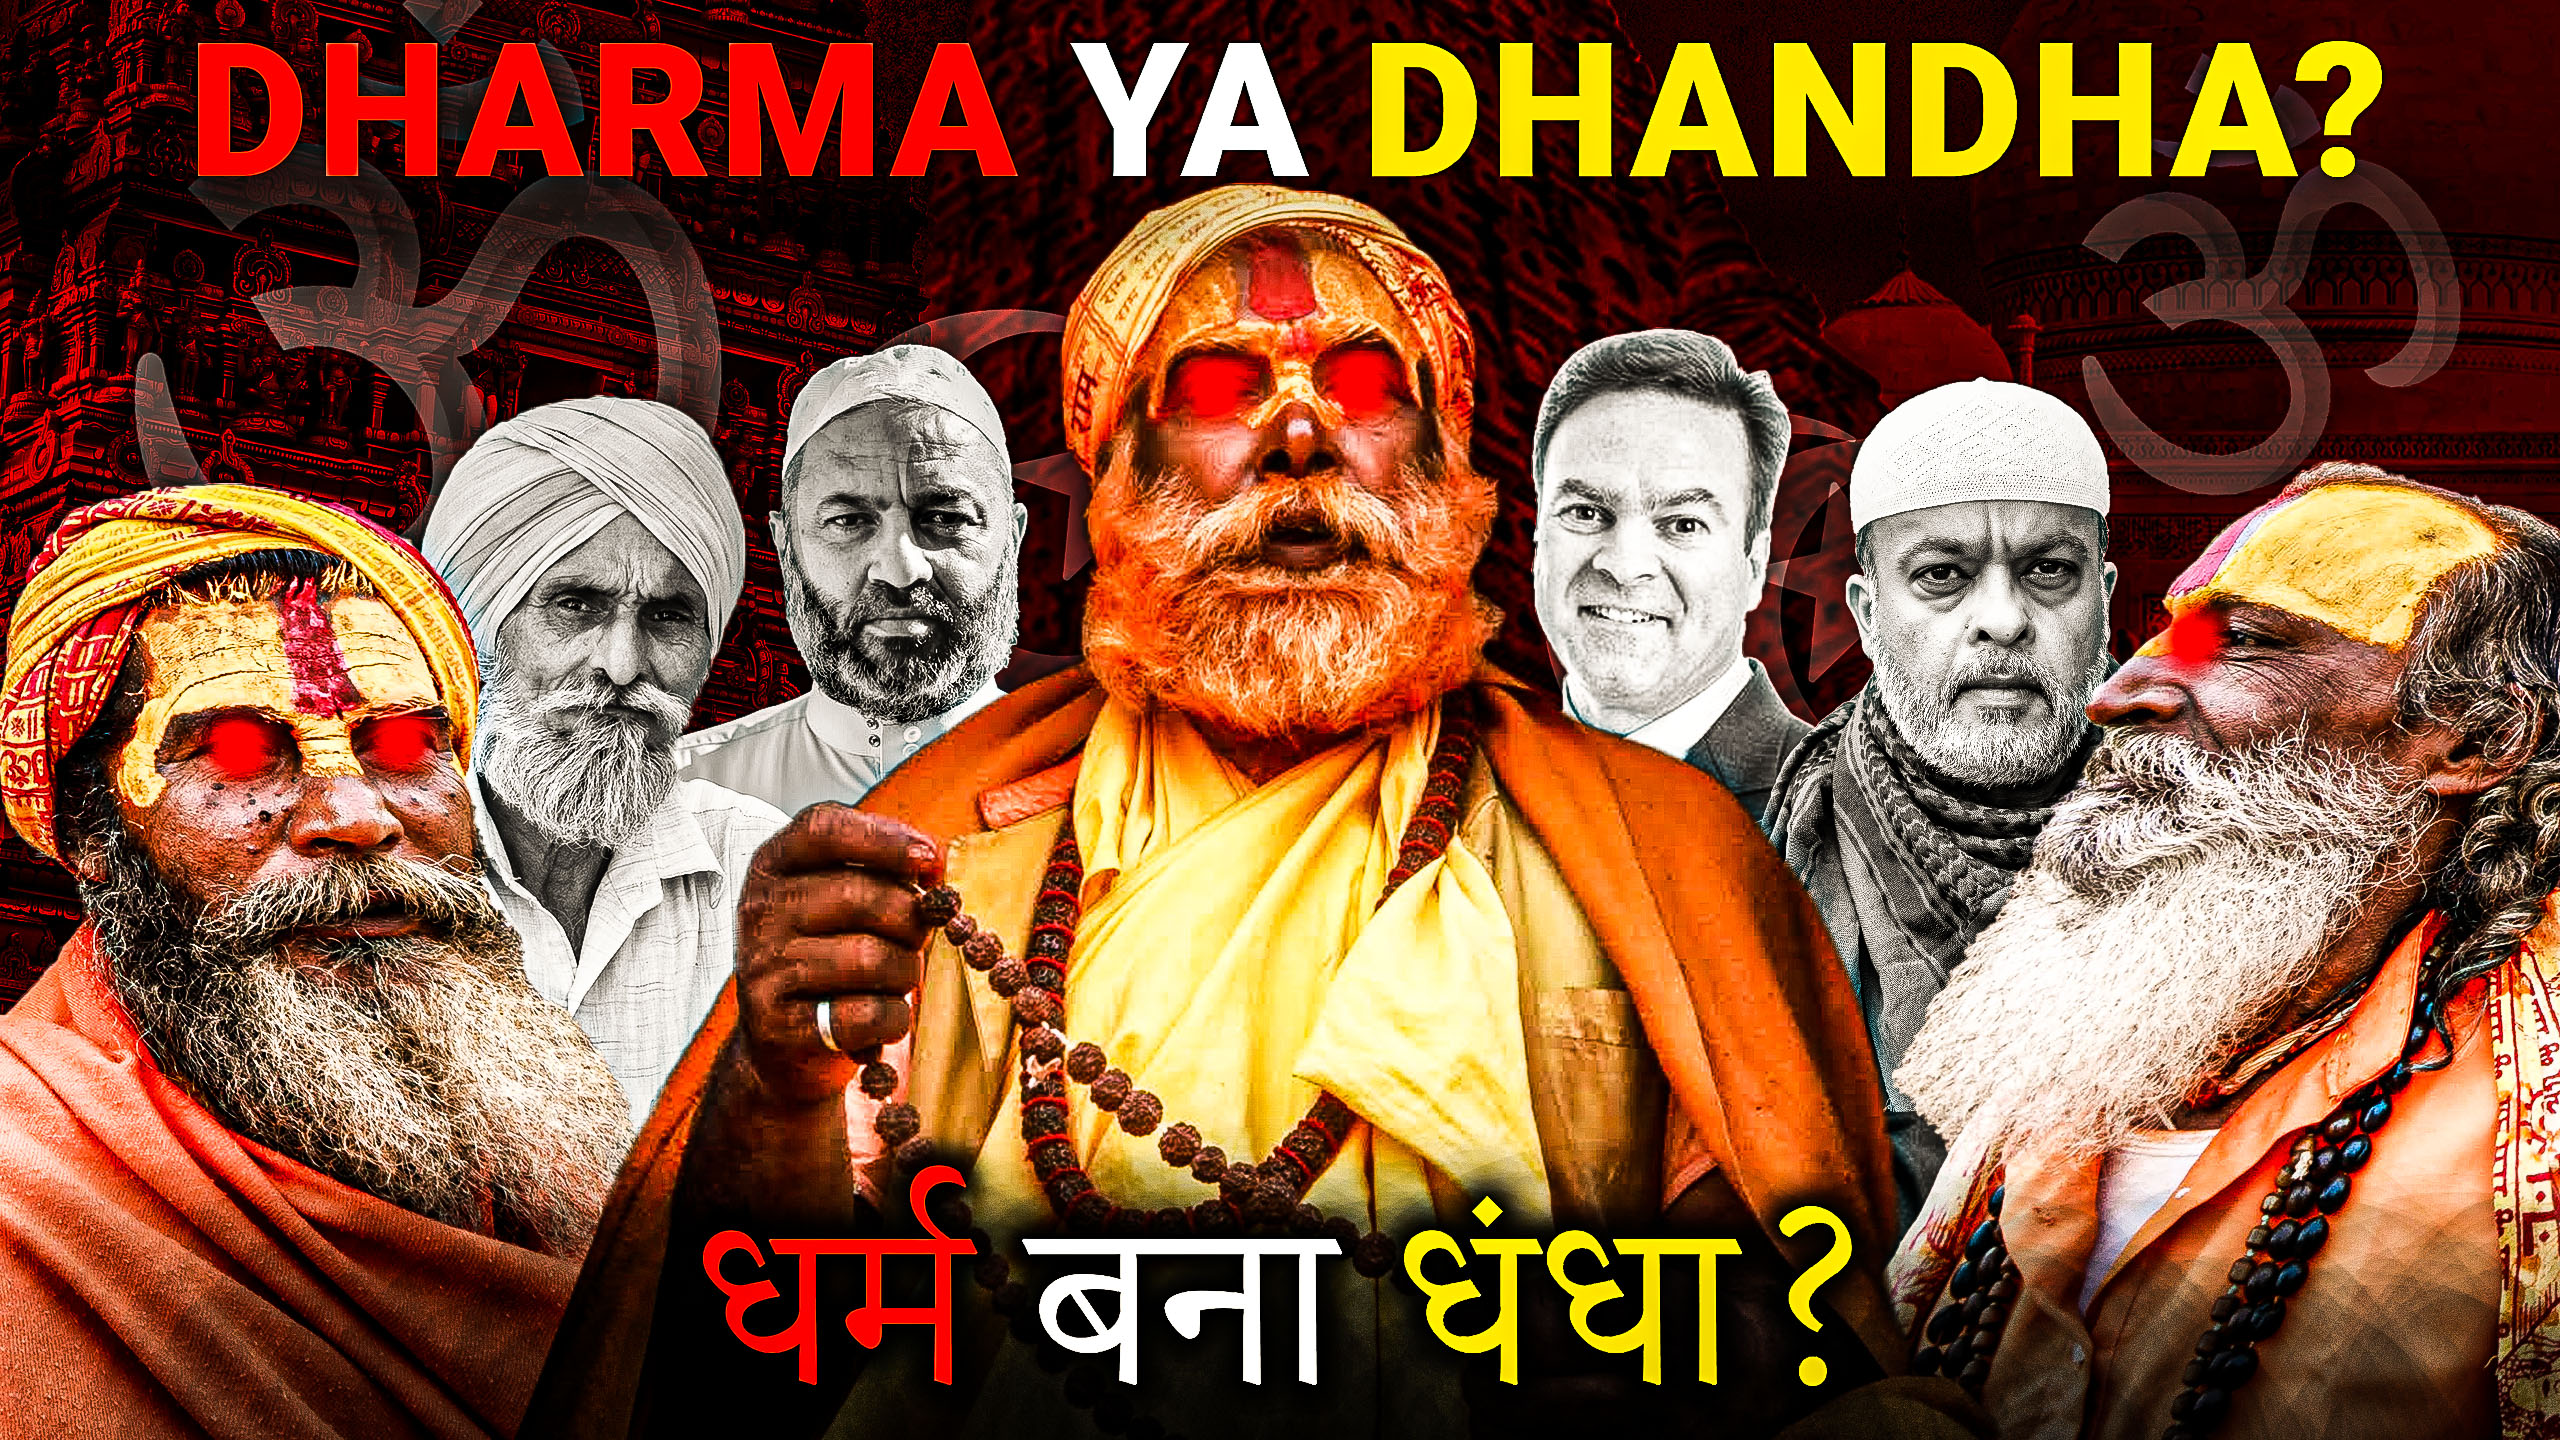 Dharma ya Dhandha